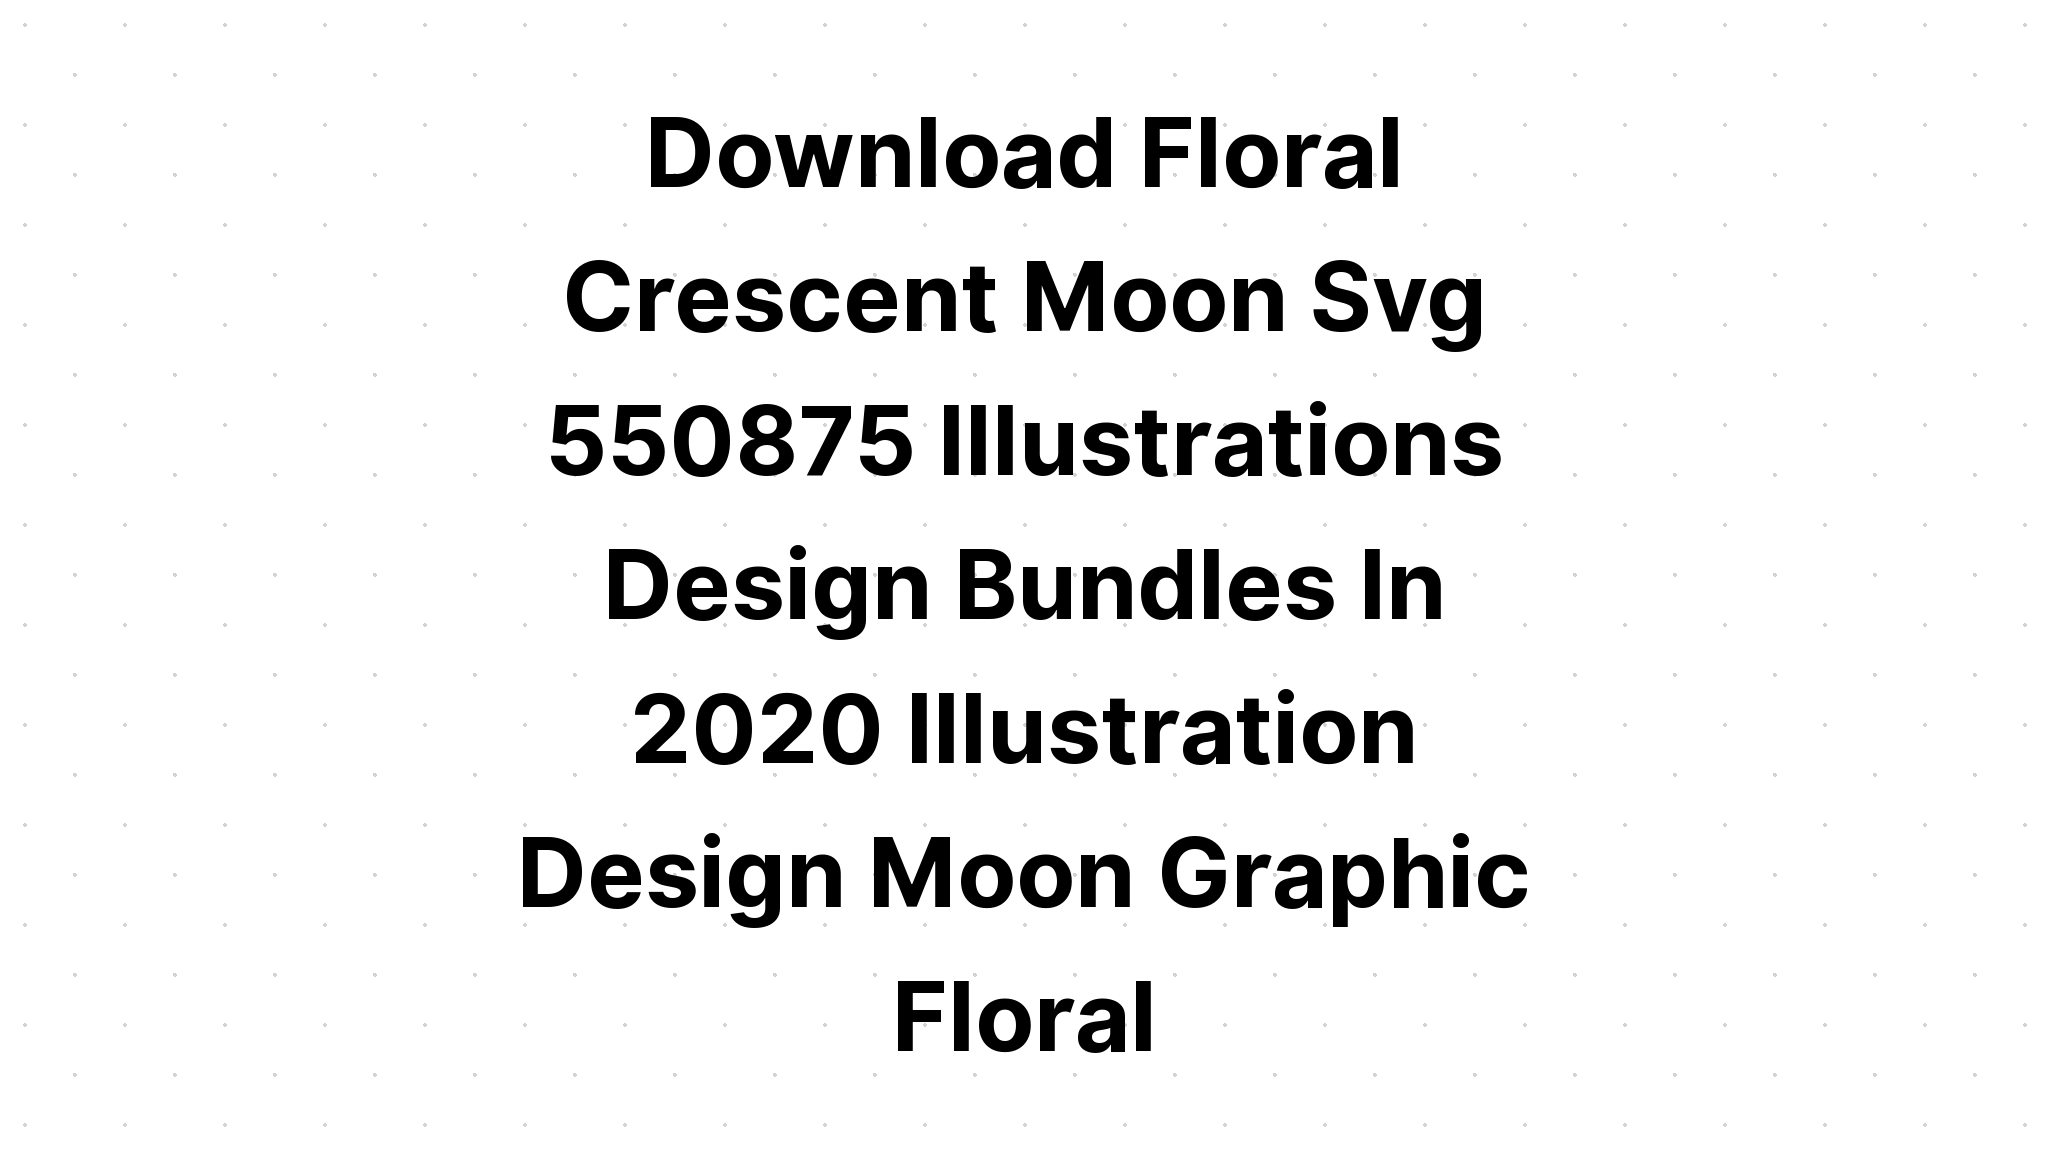 Download Floral And Crescent Moon Bundle SVG File